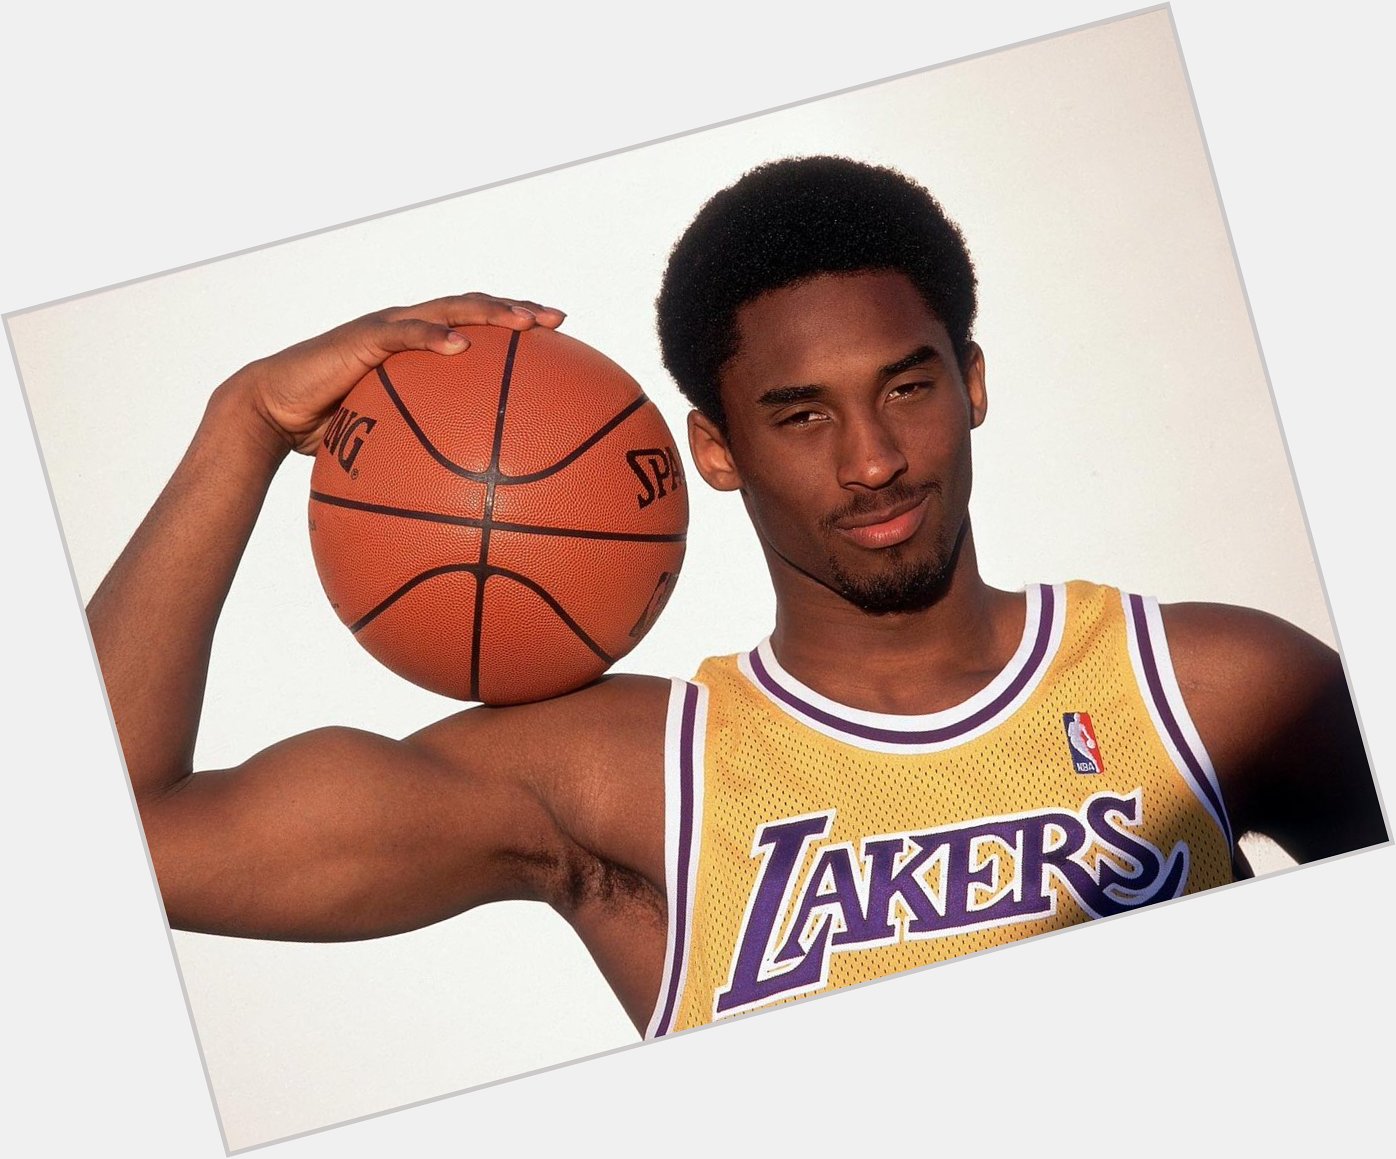 Happy 39th birthday to Kobe Bryant! 